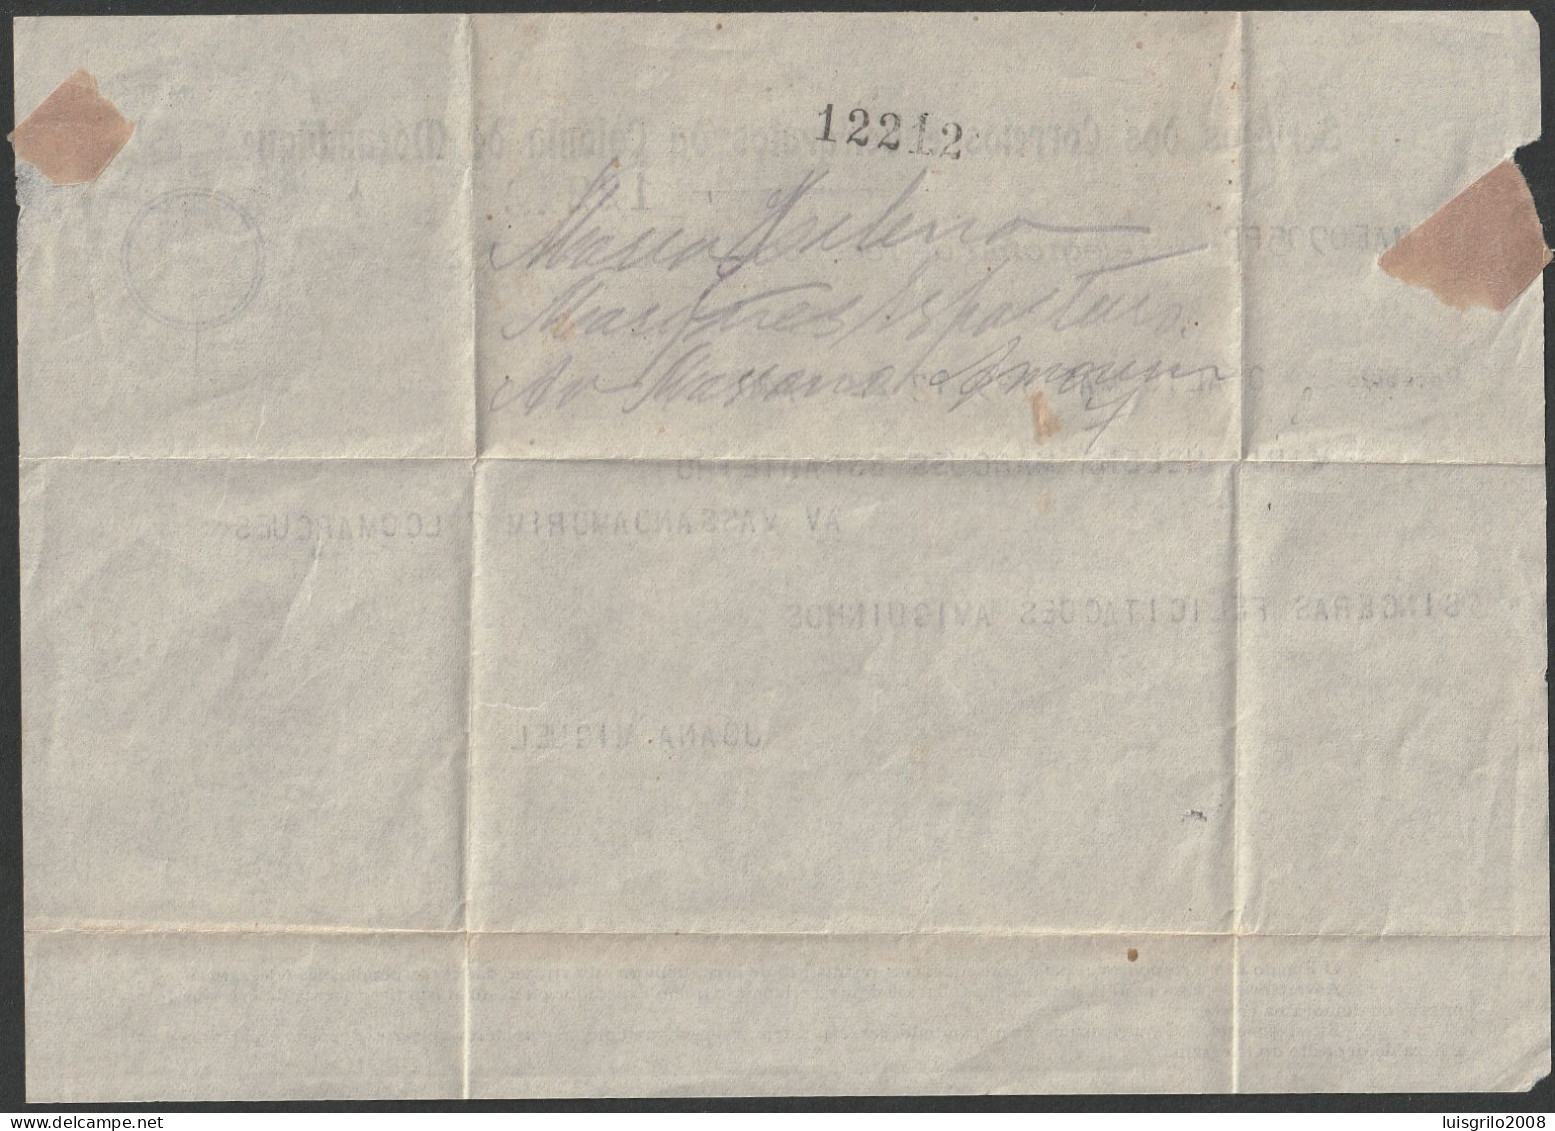 Telegram/ Telegrama De Recepção - Colónia De Moçambique > Lourenço Marques -|- Postmark - Lourenço Marques. 1947 - Storia Postale